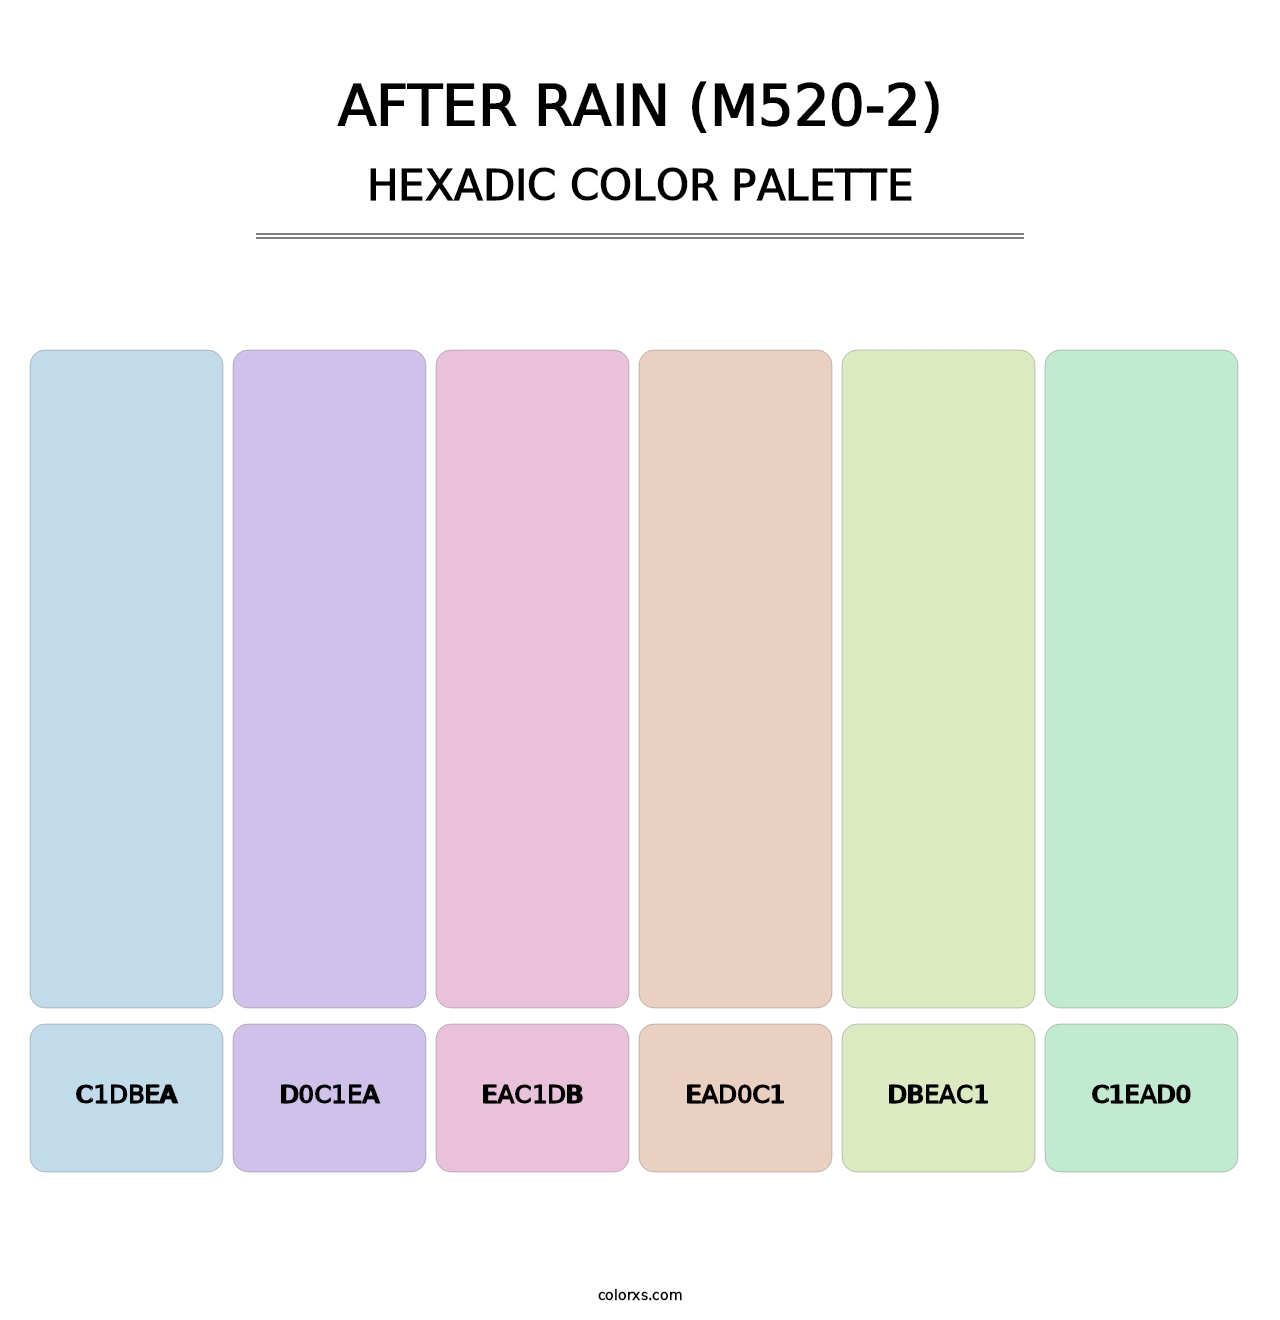 After Rain (M520-2) - Hexadic Color Palette